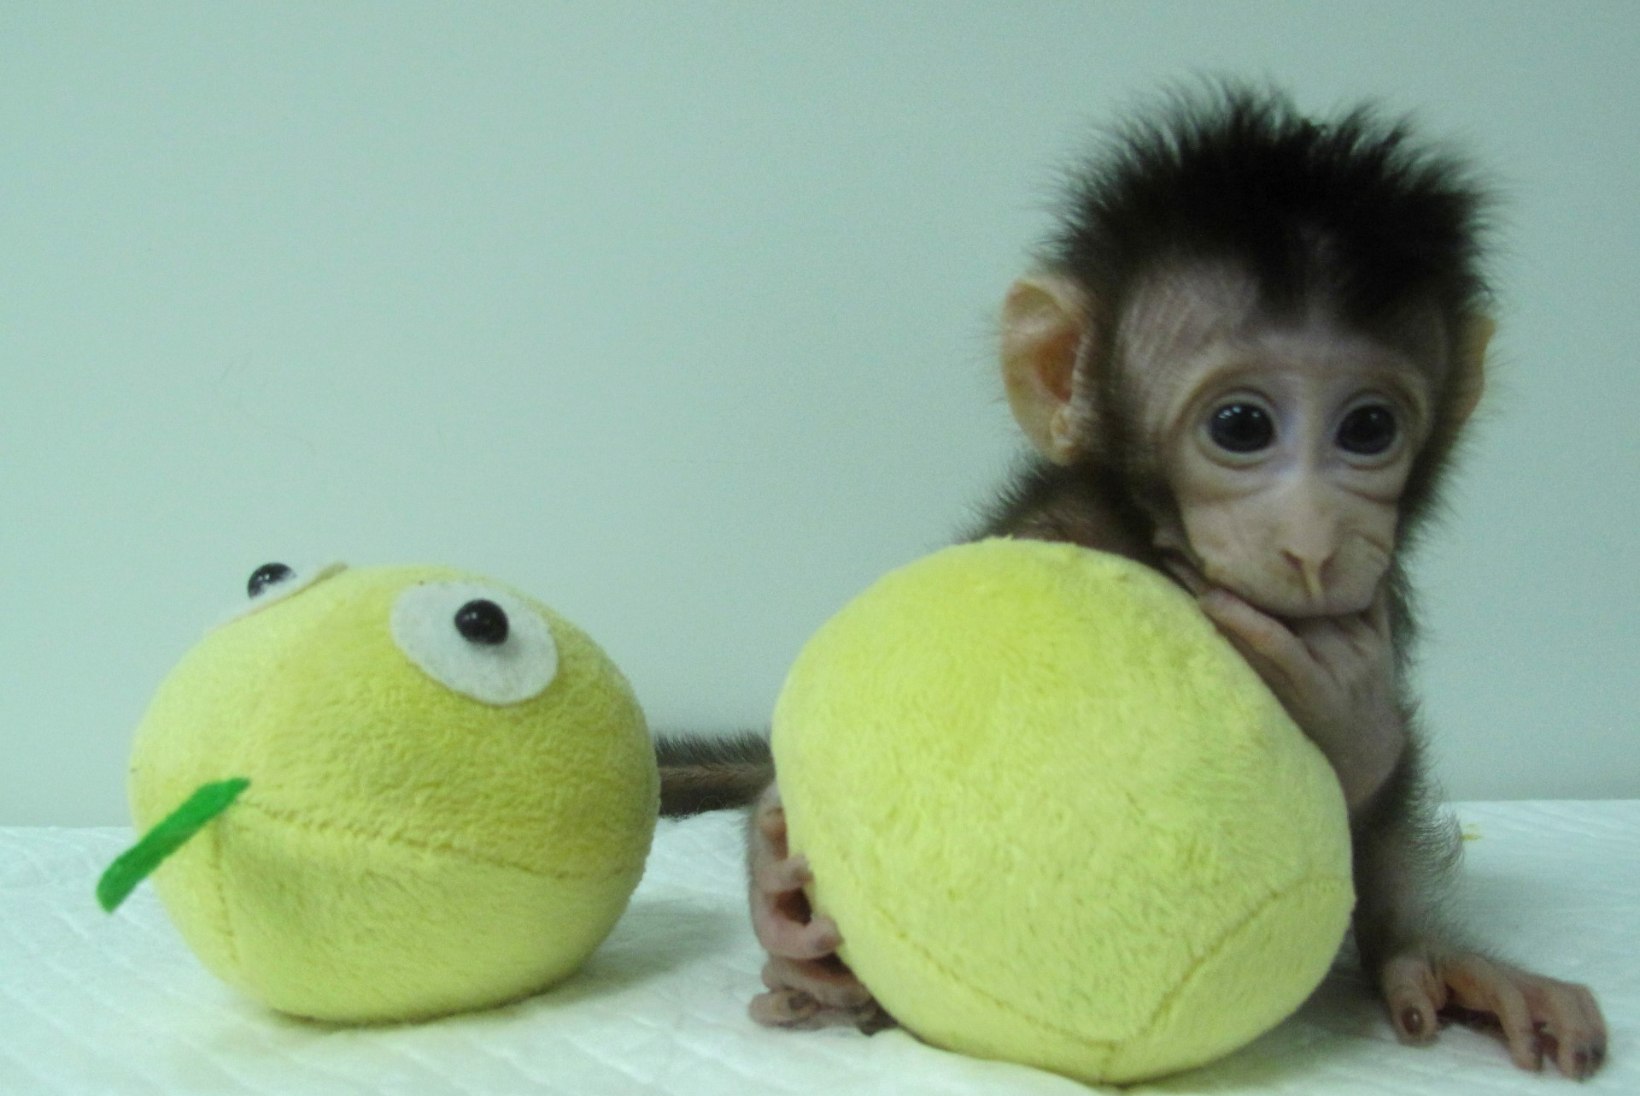 FOTOD JA VIDEO | Hiinas klooniti kaks ahvi